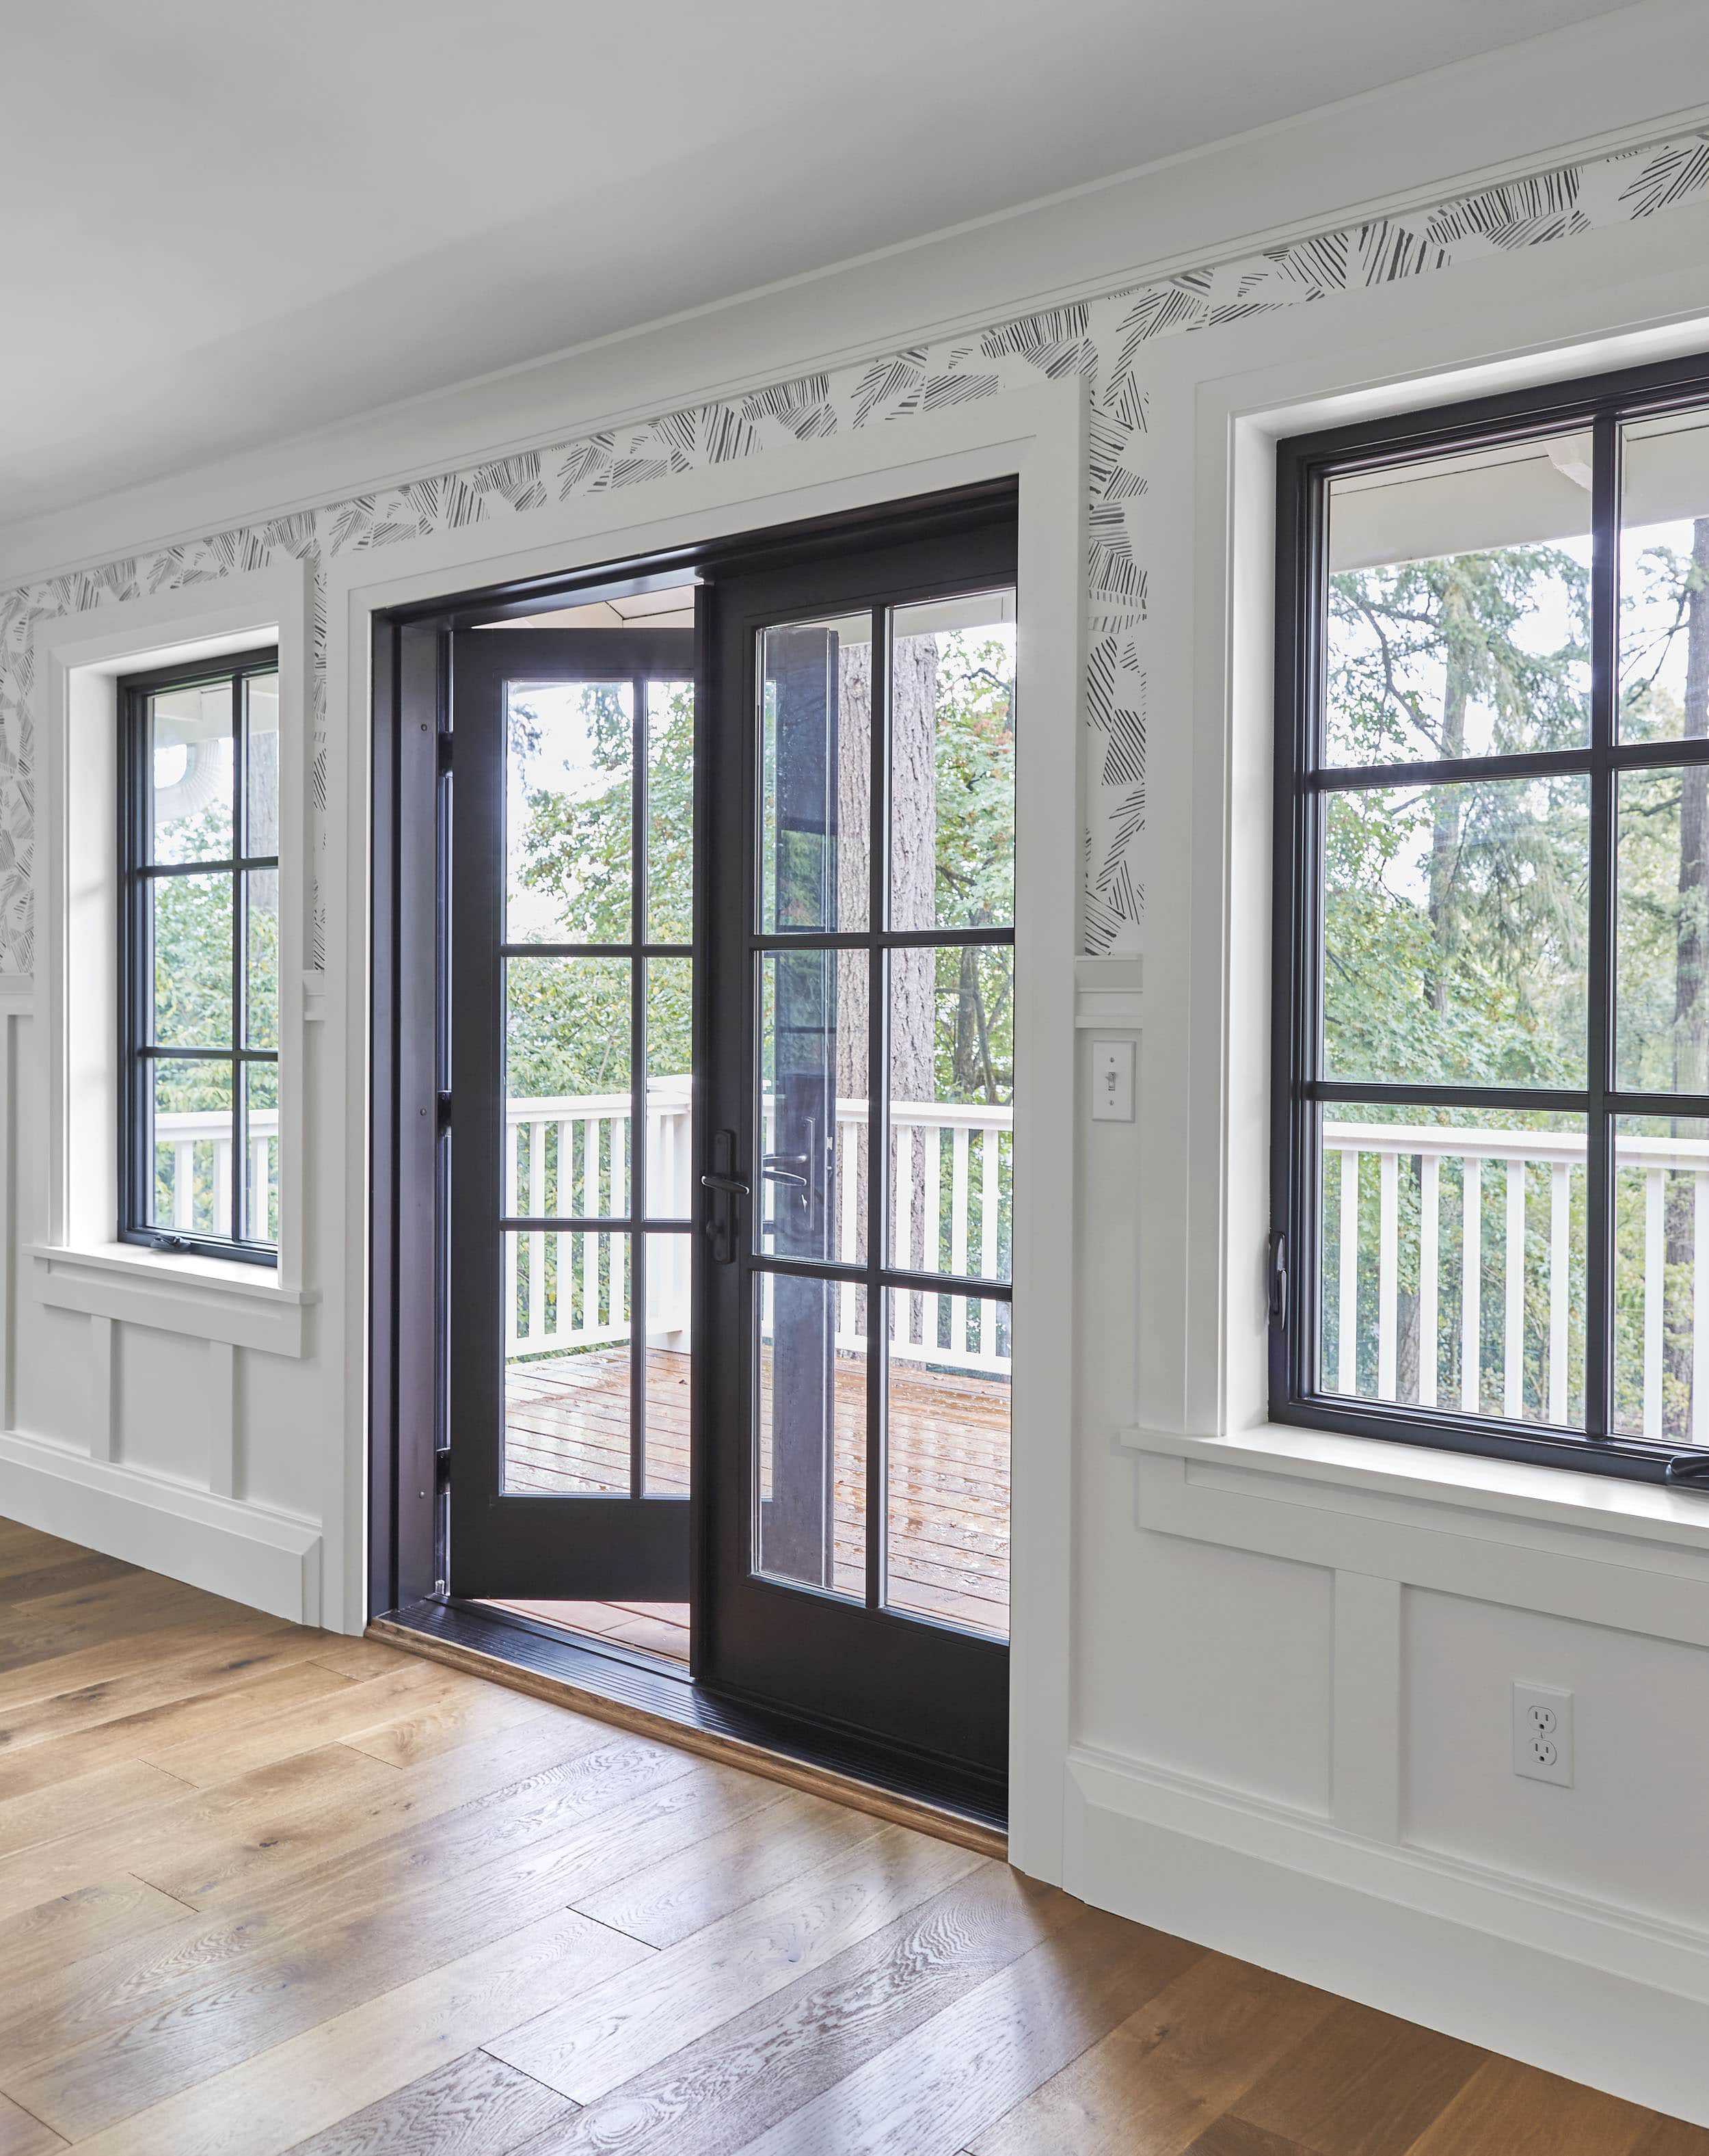 High Specs American Style Thermal Break Energy Saving Customized Color Aluminum Casement Door Swing Style Door